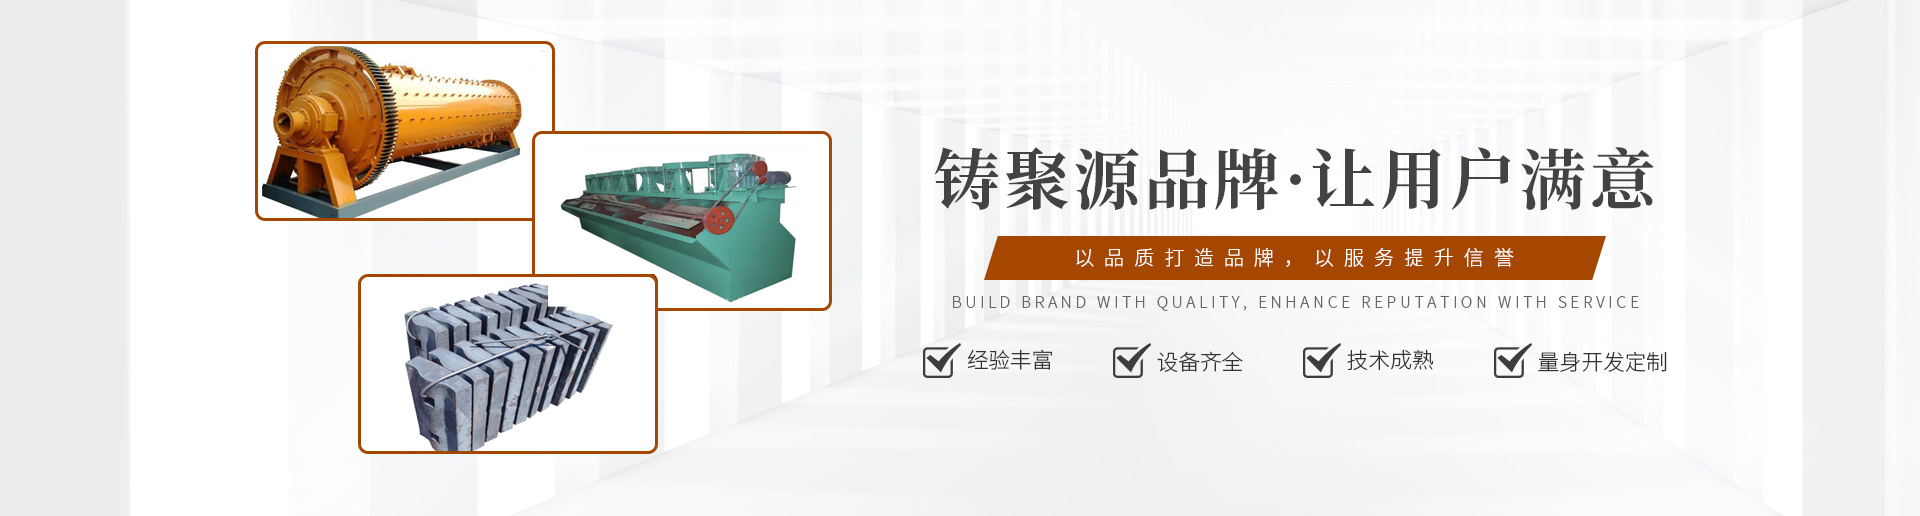 吉林省聚源重型机械制造有限公司banner